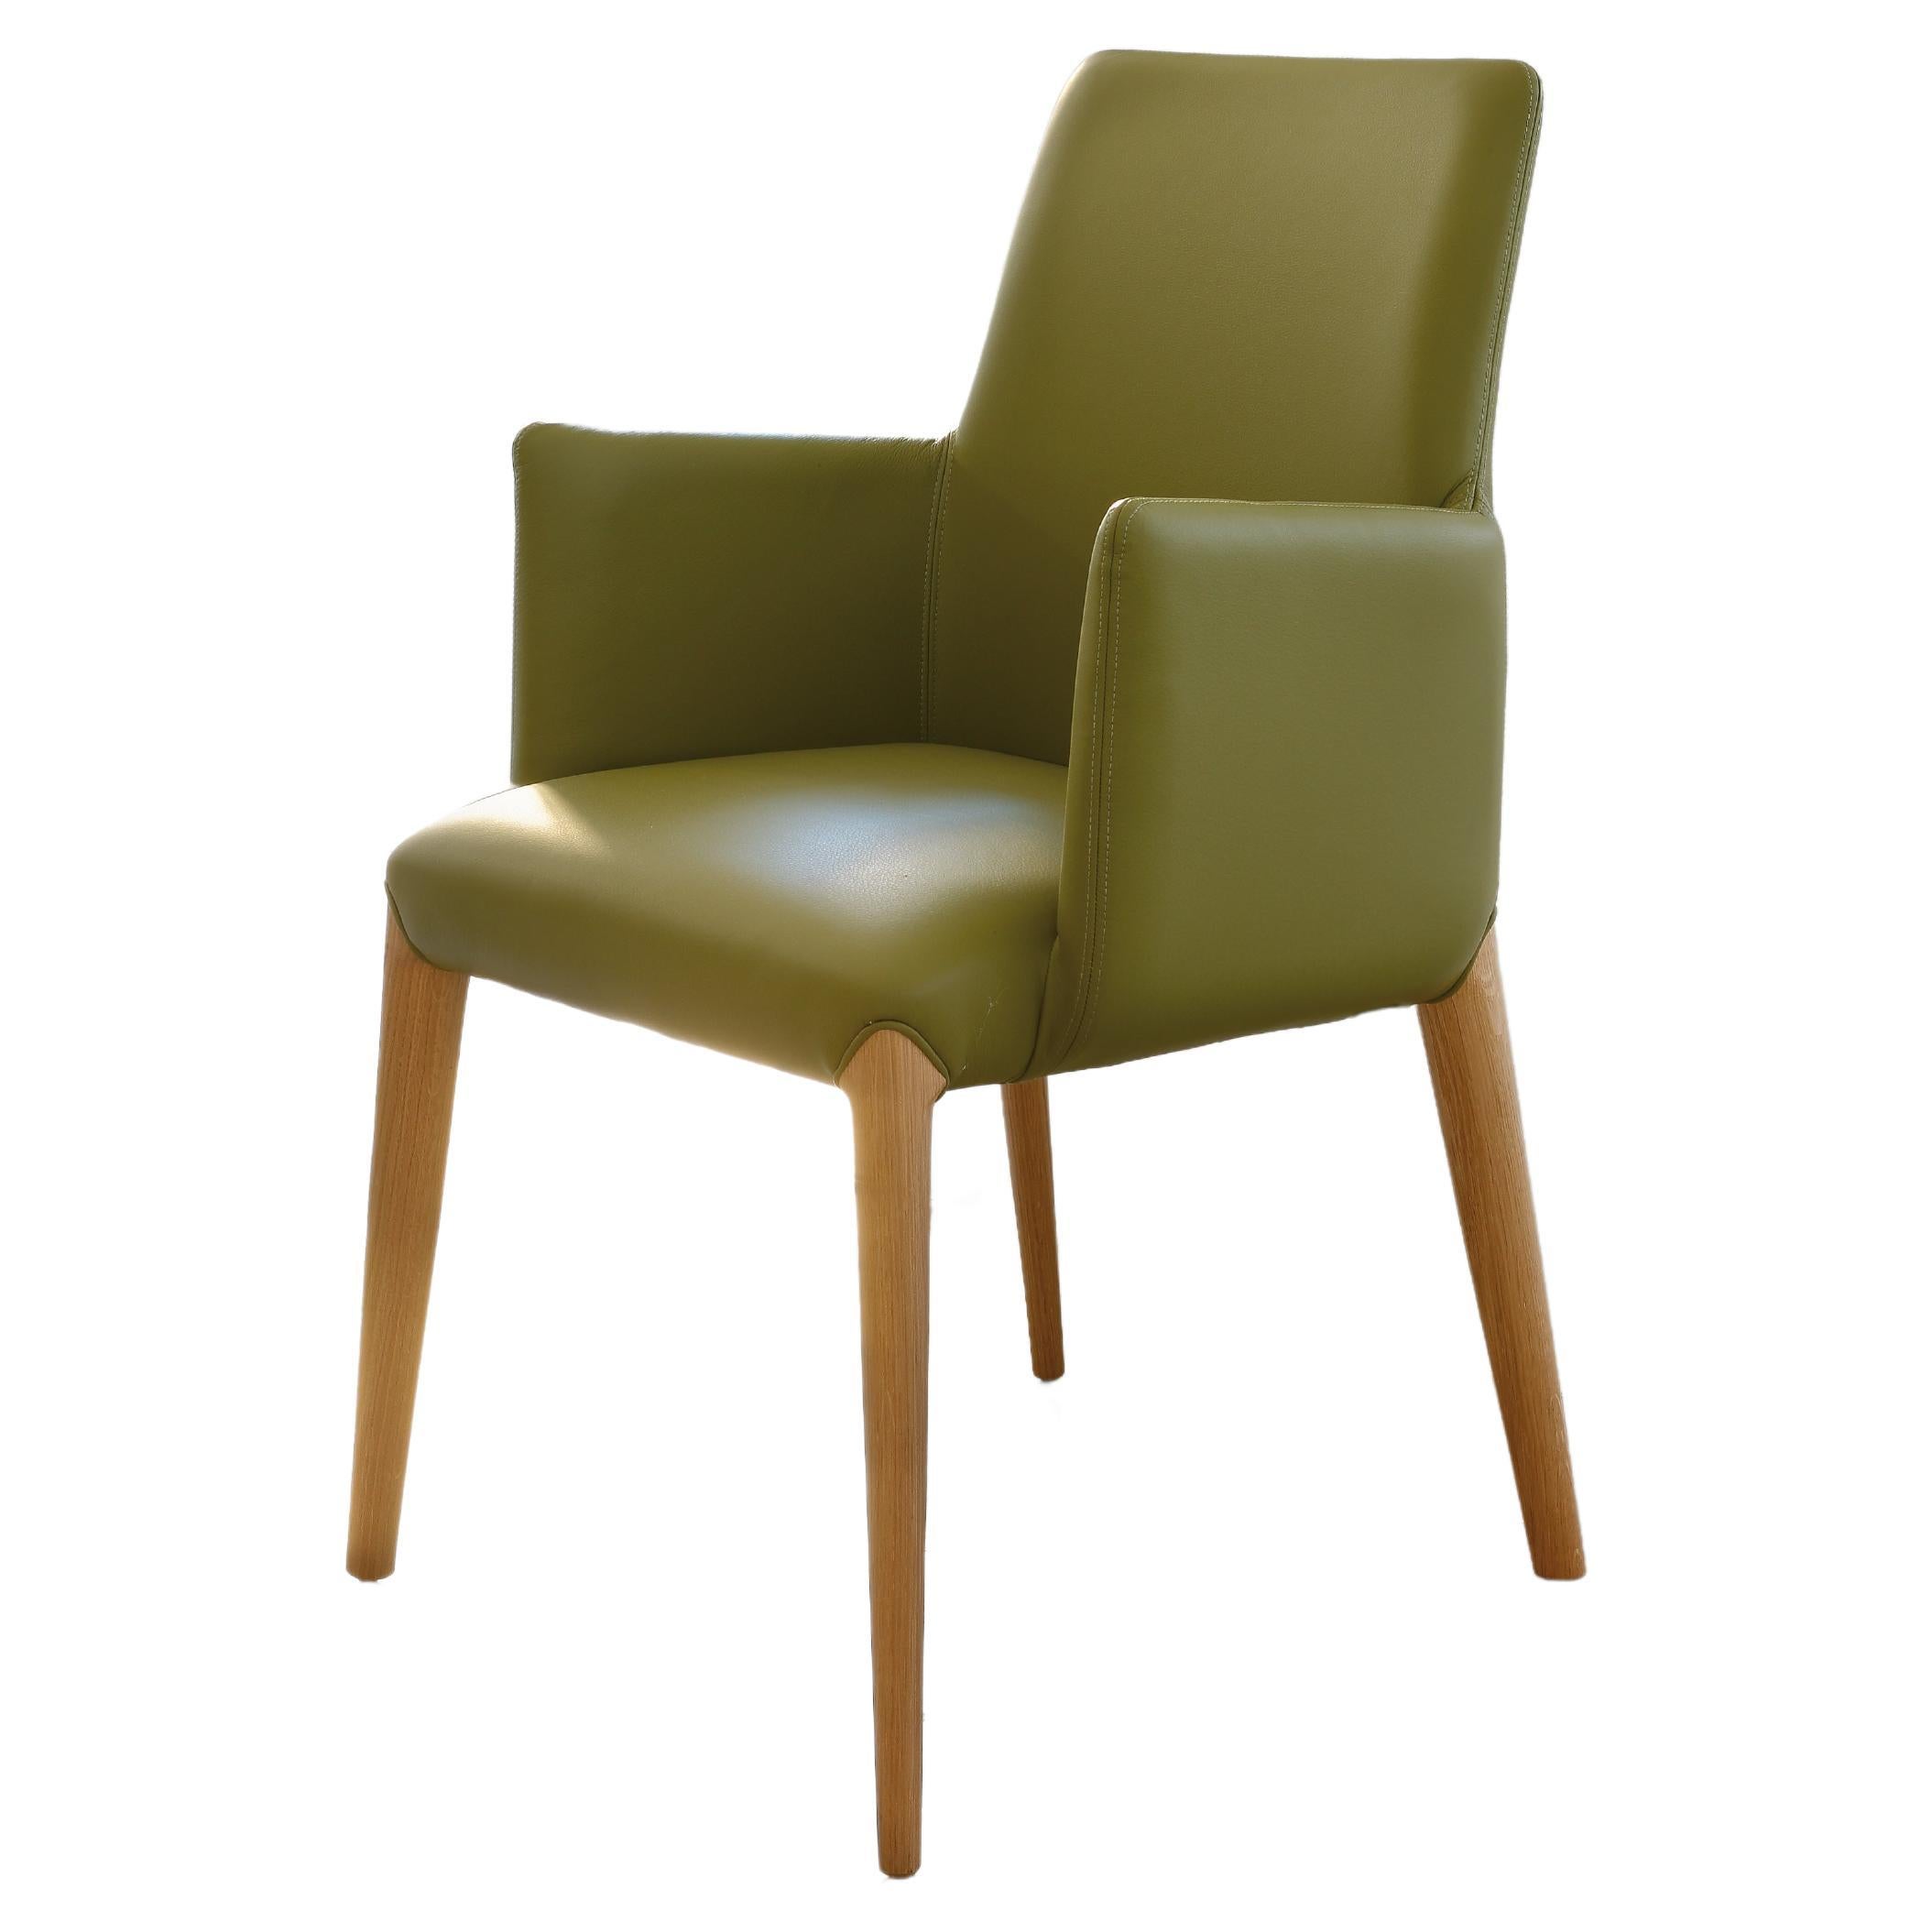 Sessel-Kunstwerk. Ines aus grünem Leder für Wohnzimmer oder Restaurant, bequem 